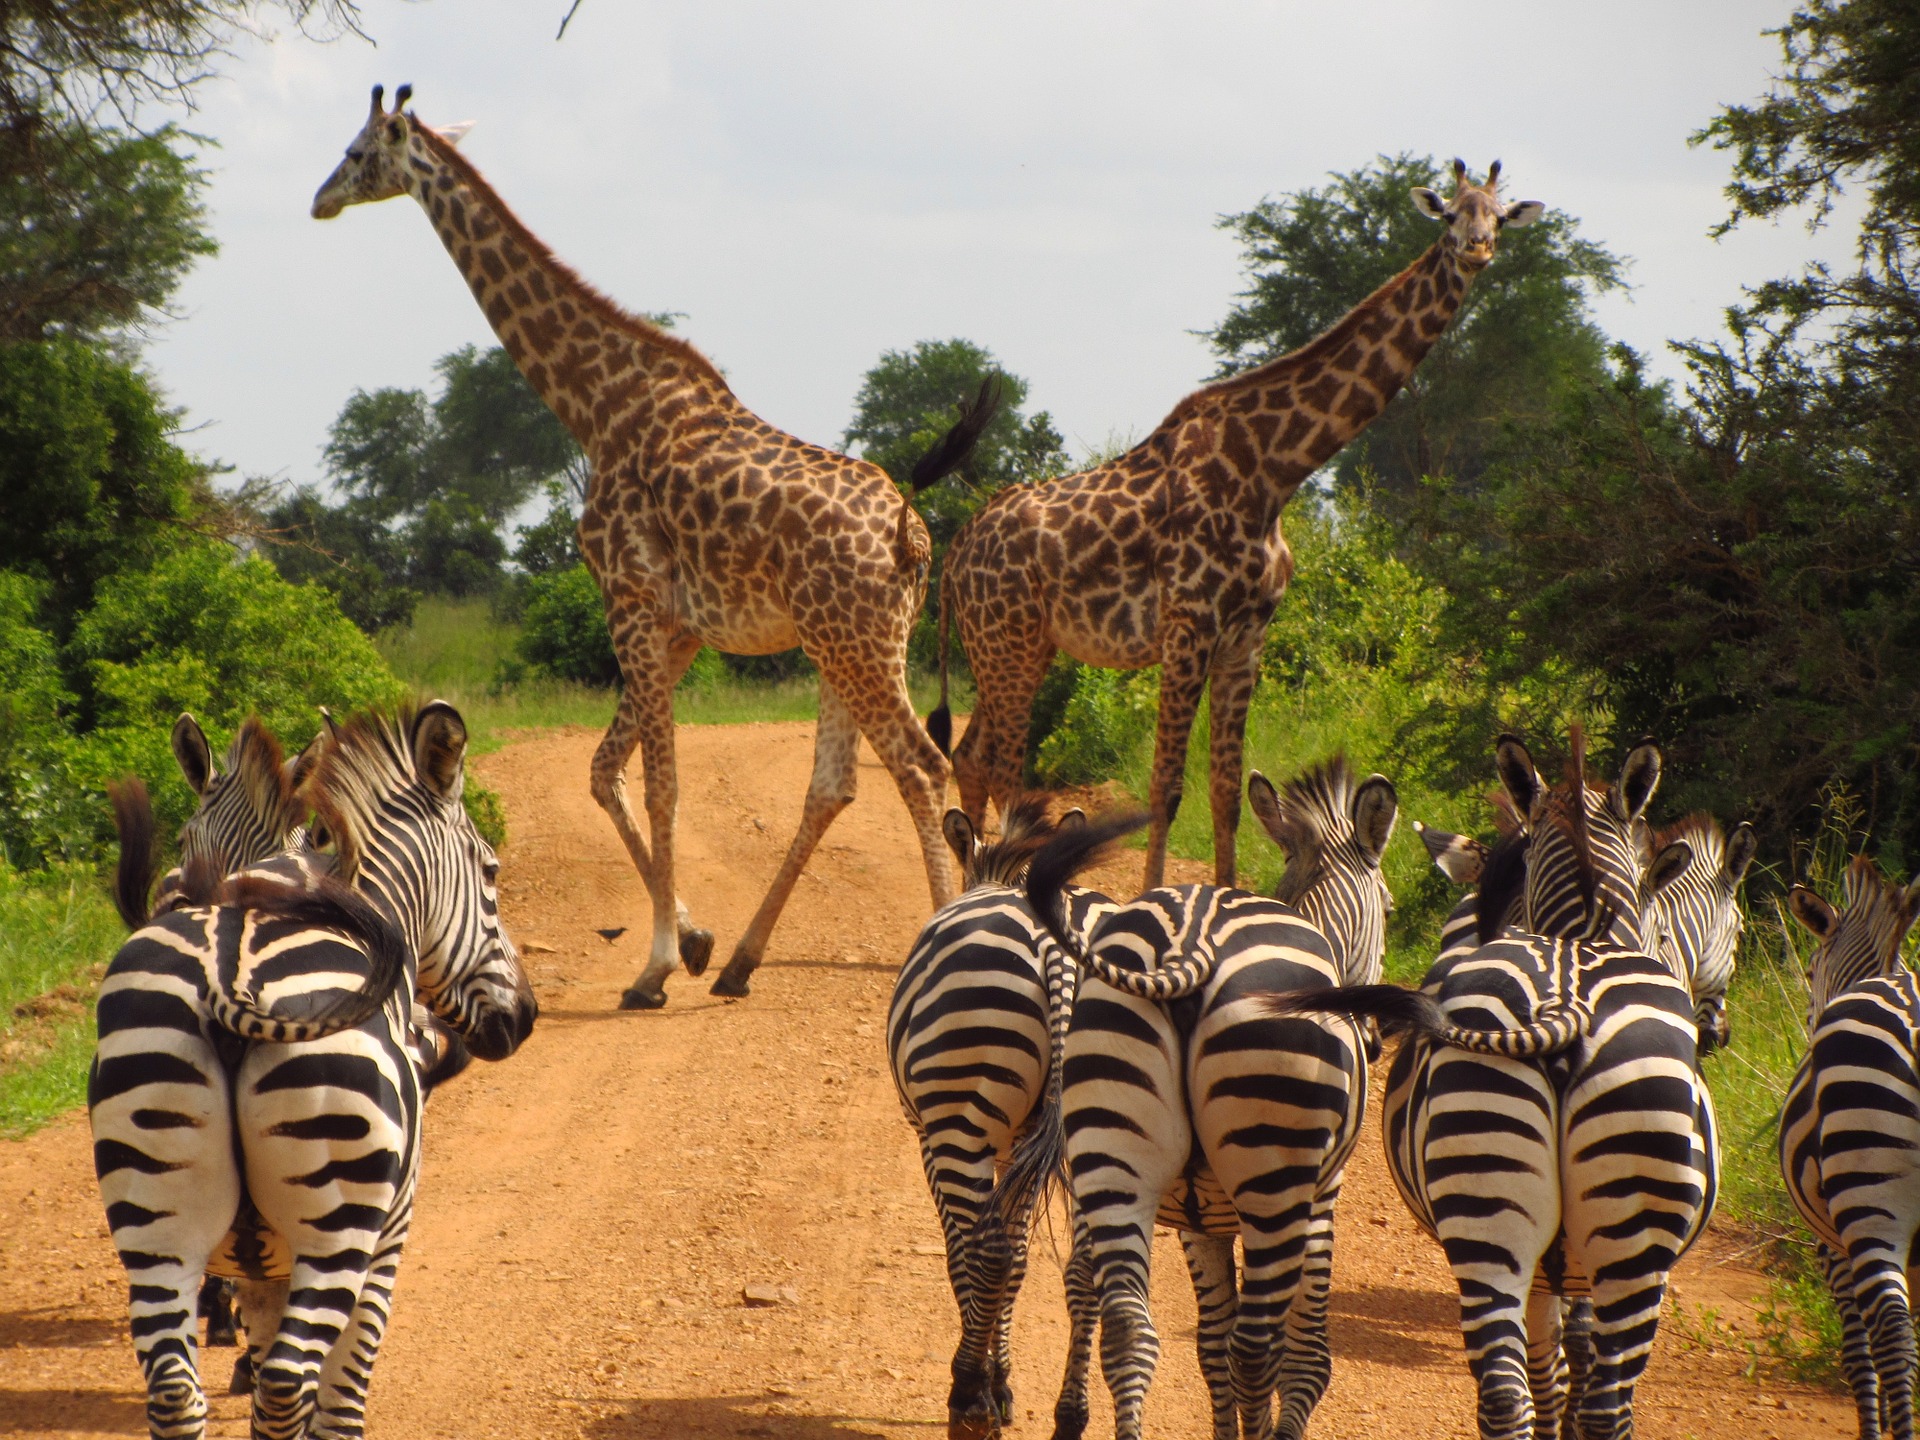 Wandergemeinschaft der Zebras und Giraffen in Afrika.